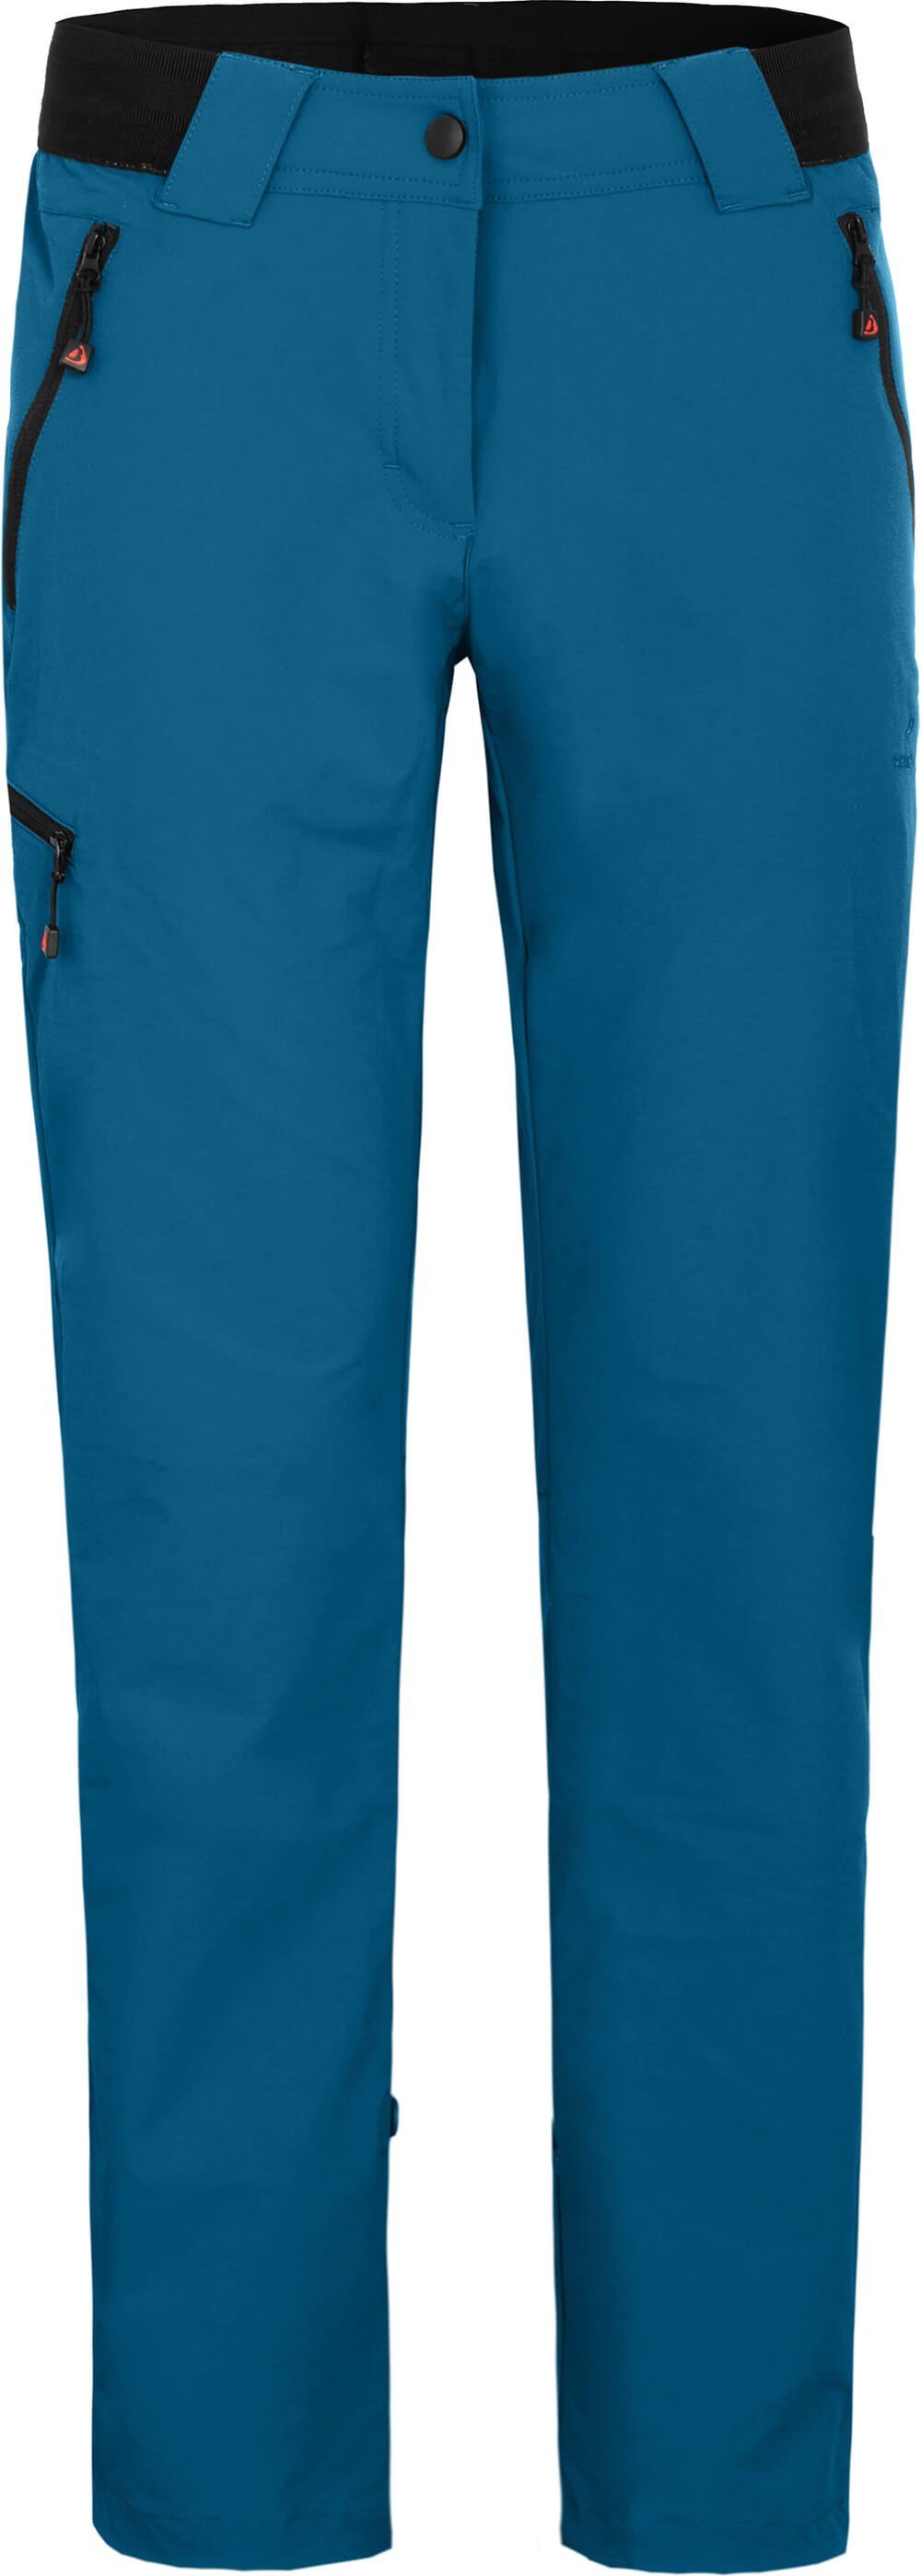 Bergson Outdoorhose VIDAA COMFORT Damen Wanderhose, leicht, strapazierfähig, Kurzgrößen, Saphir blau